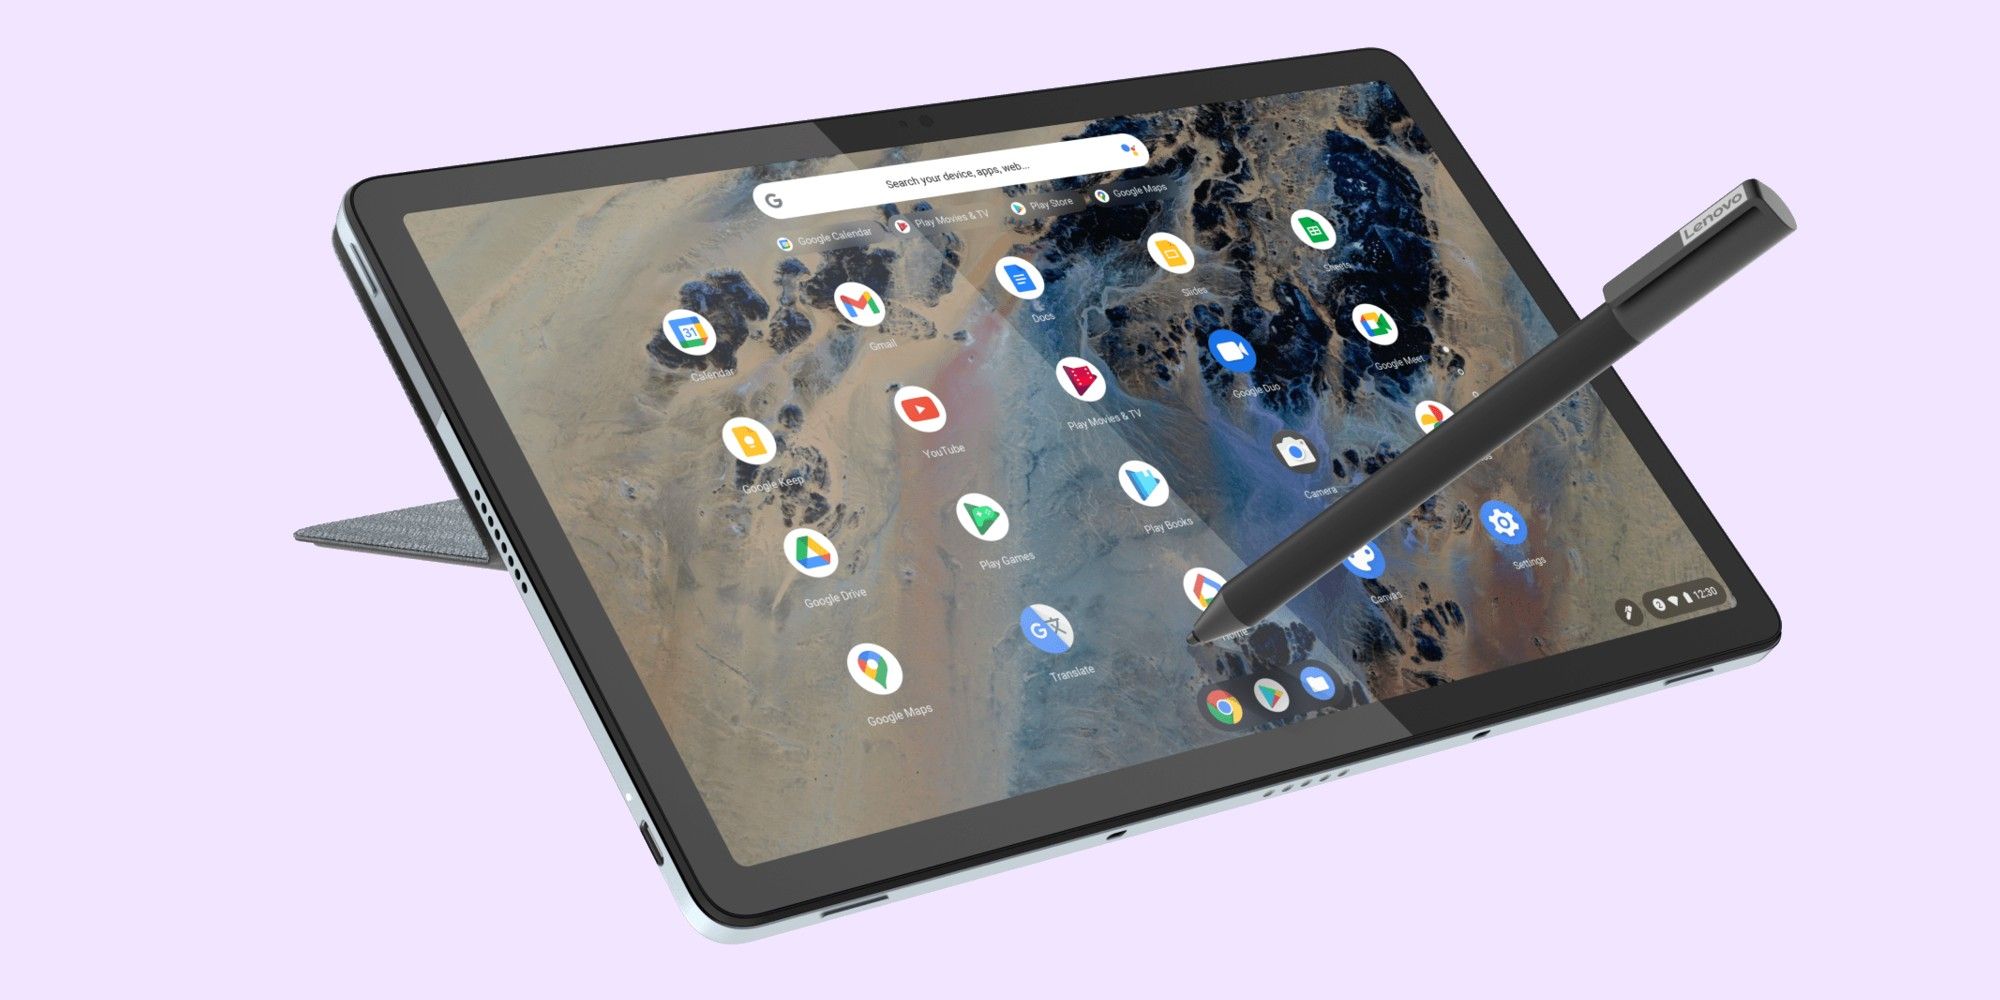 The IdeaPad Duet 3 is Lenovo's newest Chrome OS tablet